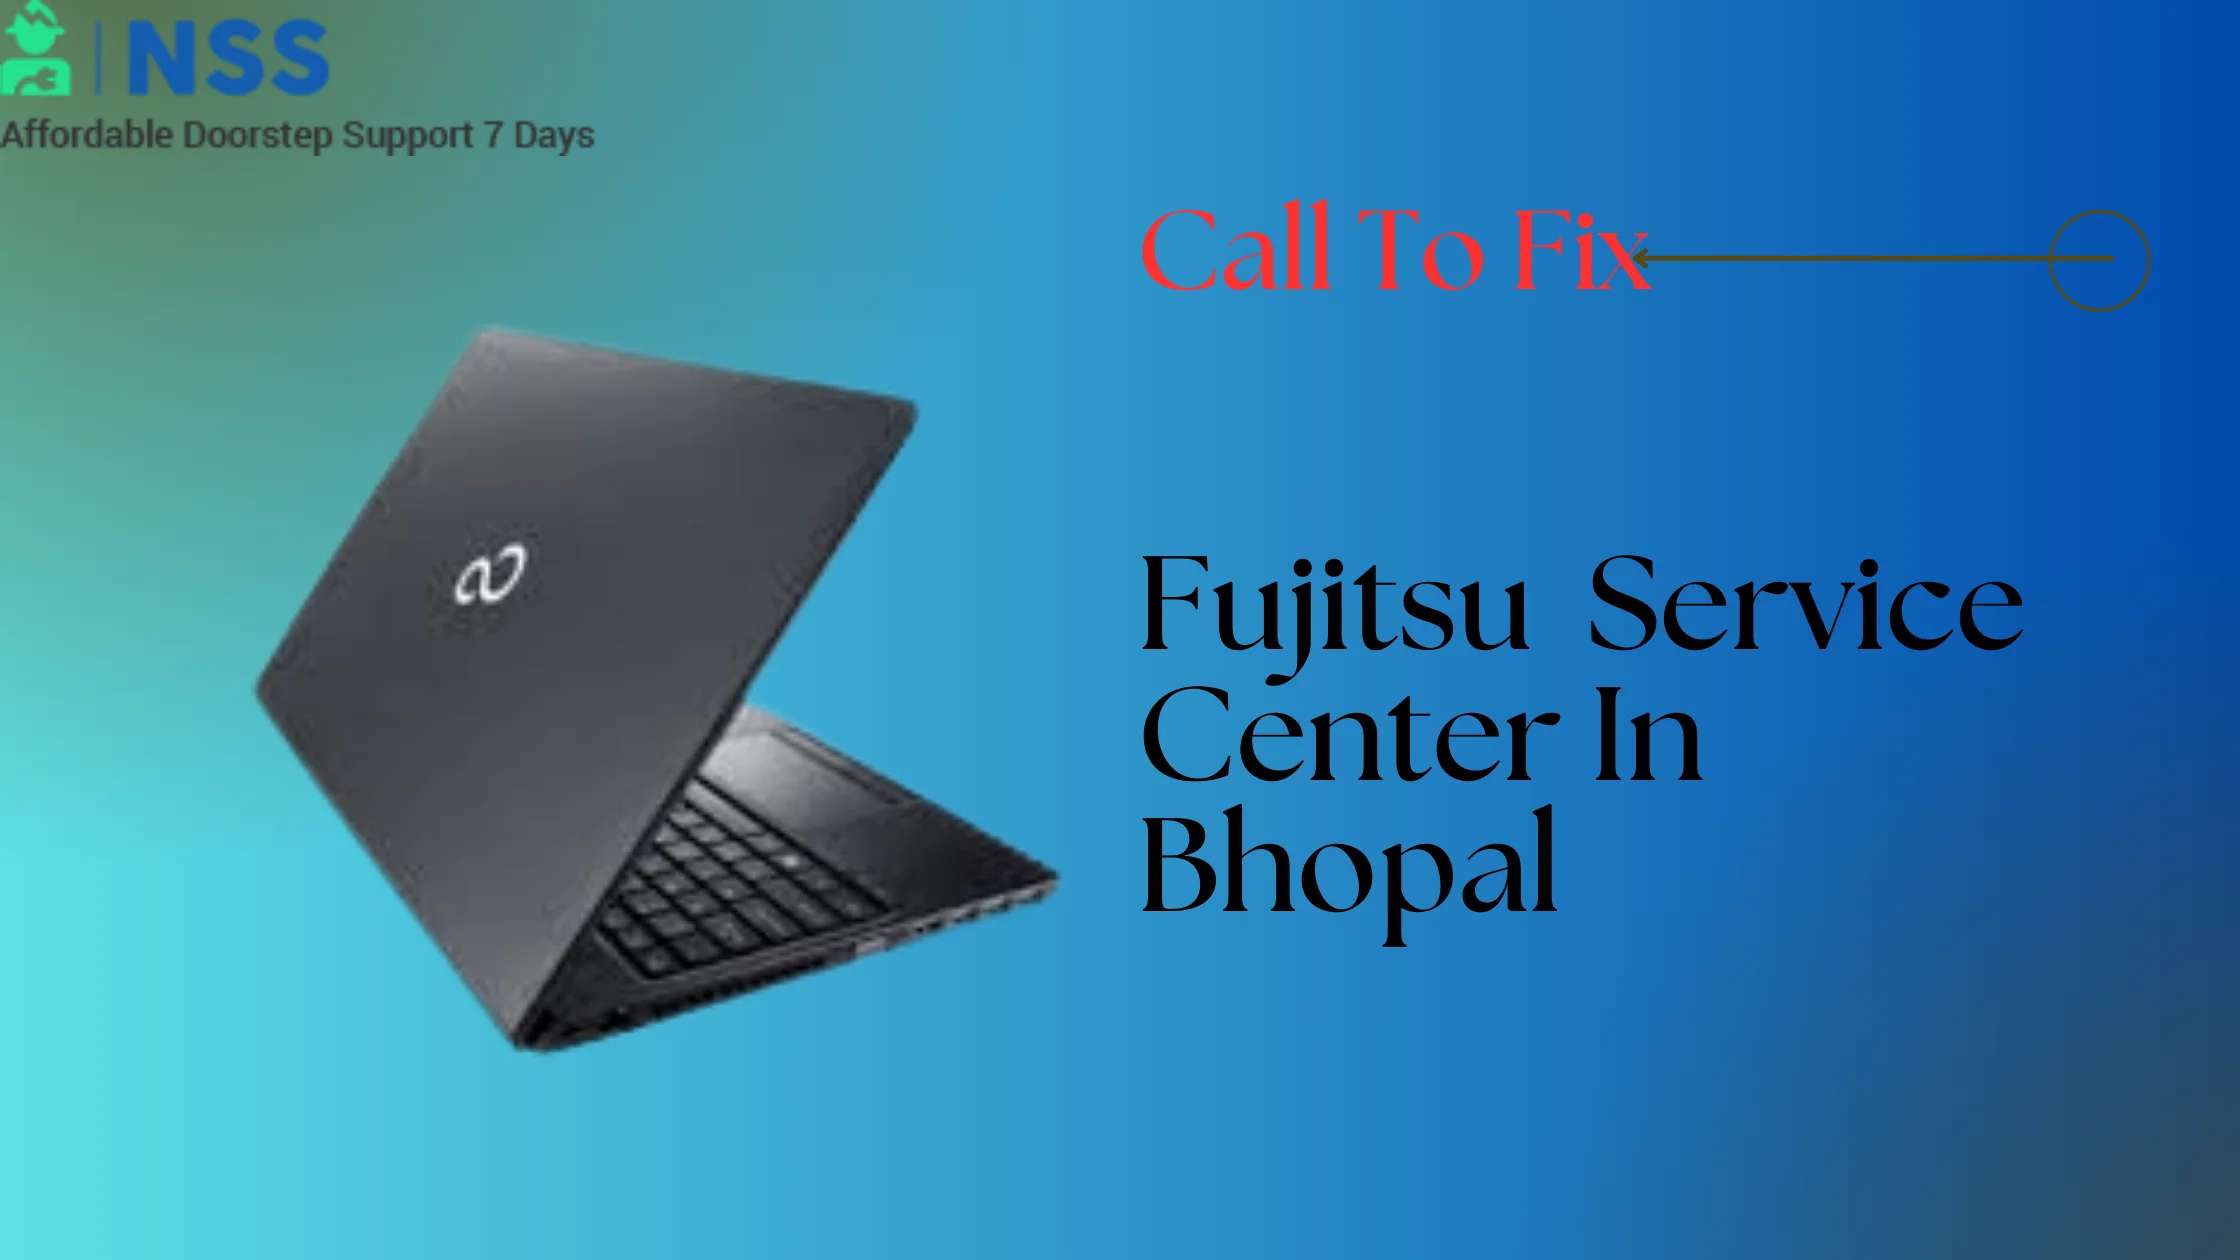 Fujitsu Service Center in Bhopal